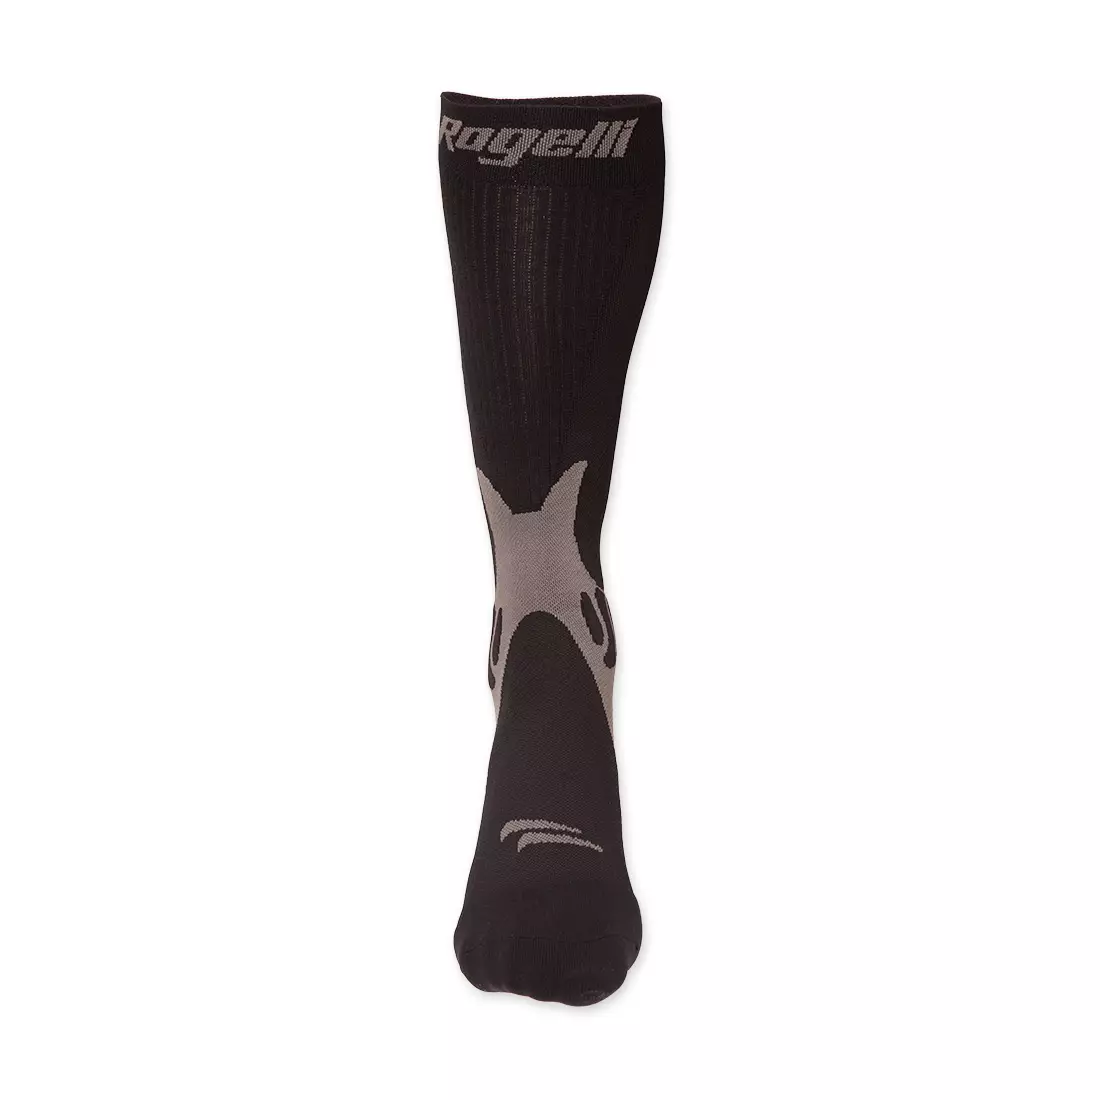 ROGELLI kompressziós zokni SK-06, fekete 007.025